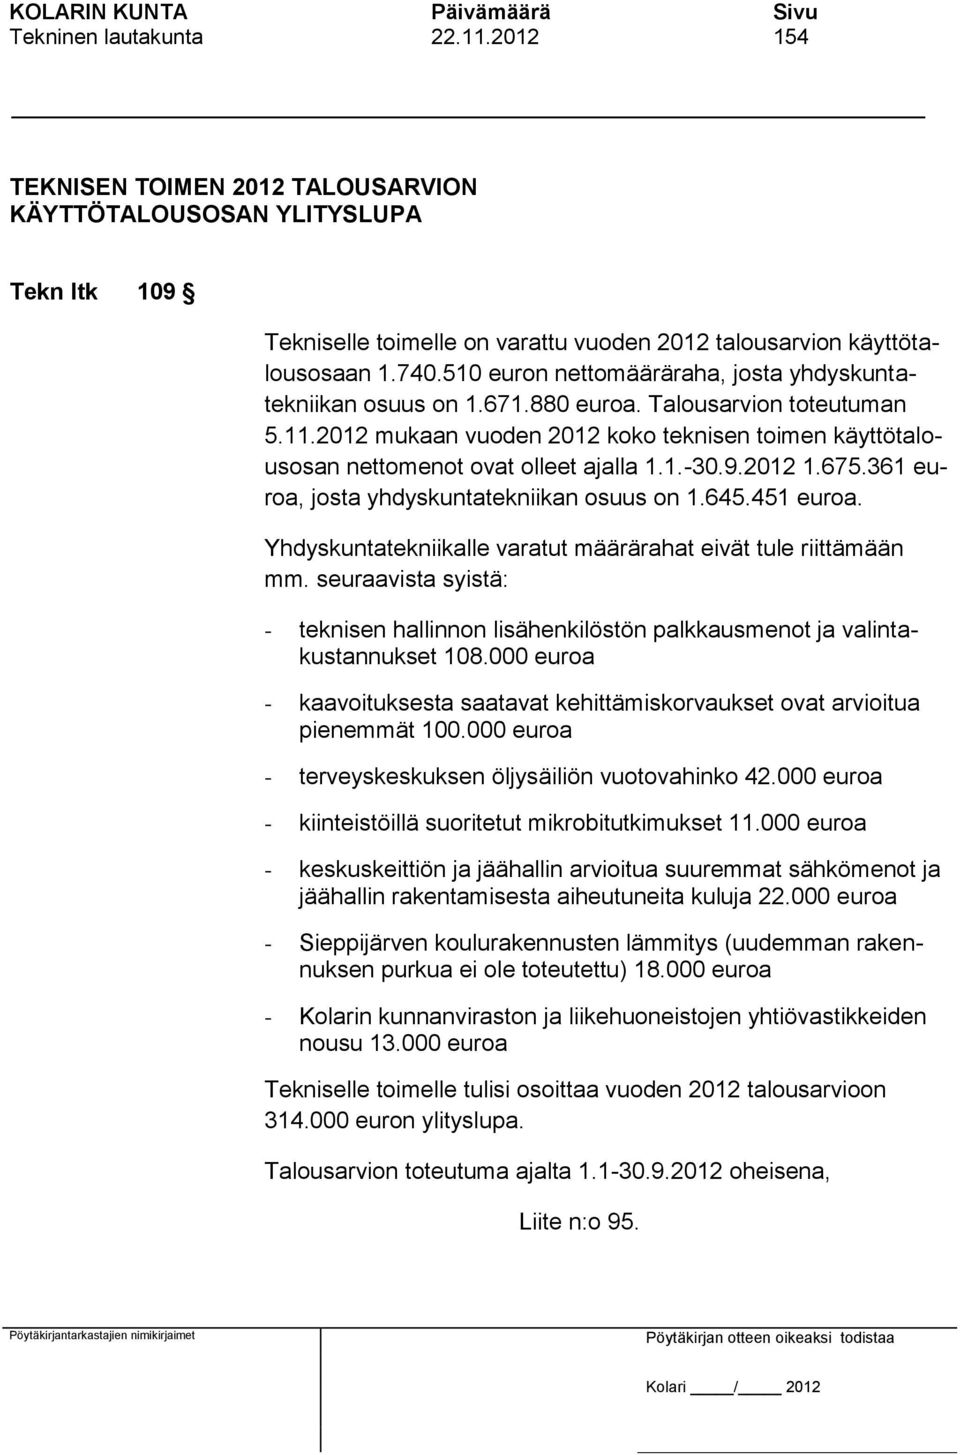 2012 mukaan vuoden 2012 koko teknisen toimen käyttötalousosan nettomenot ovat olleet ajalla 1.1.-30.9.2012 1.675.361 euroa, josta yhdyskuntatekniikan osuus on 1.645.451 euroa.